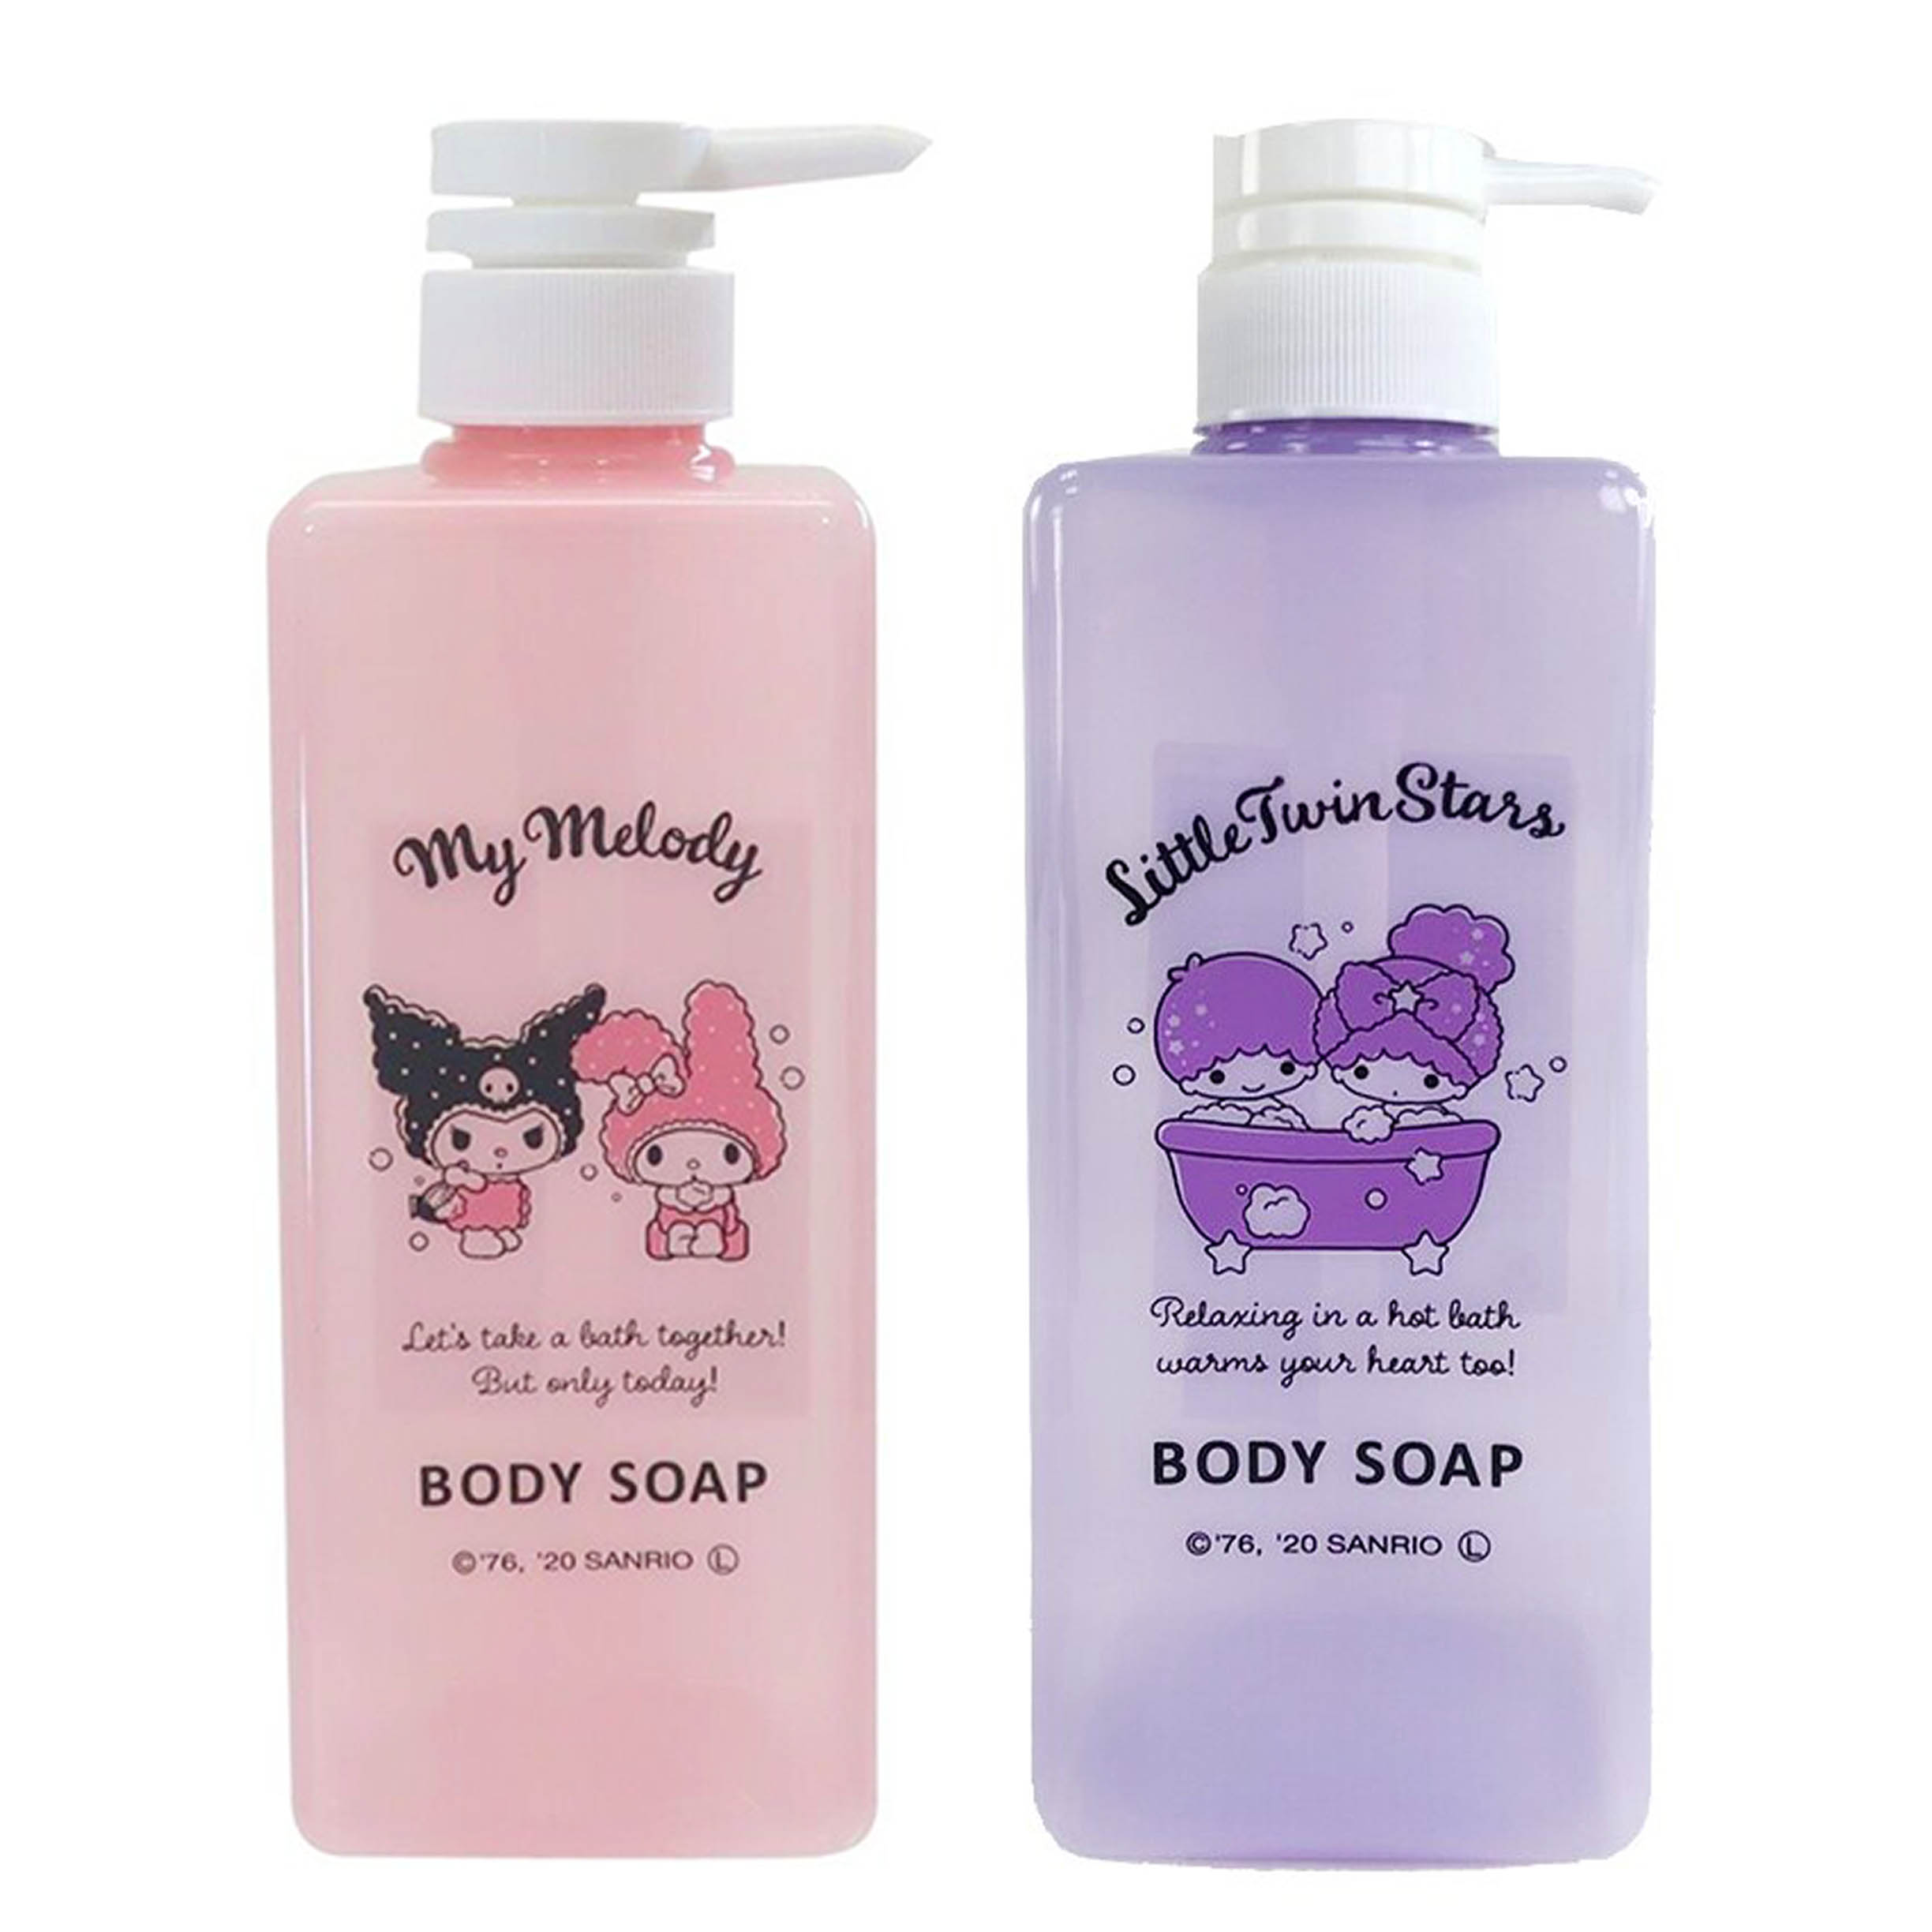 沐浴乳按壓空瓶 600ml-雙子星 美樂蒂 酷洛米 BODY SOAP 三麗鷗 Sanrio 日本進口正版授權